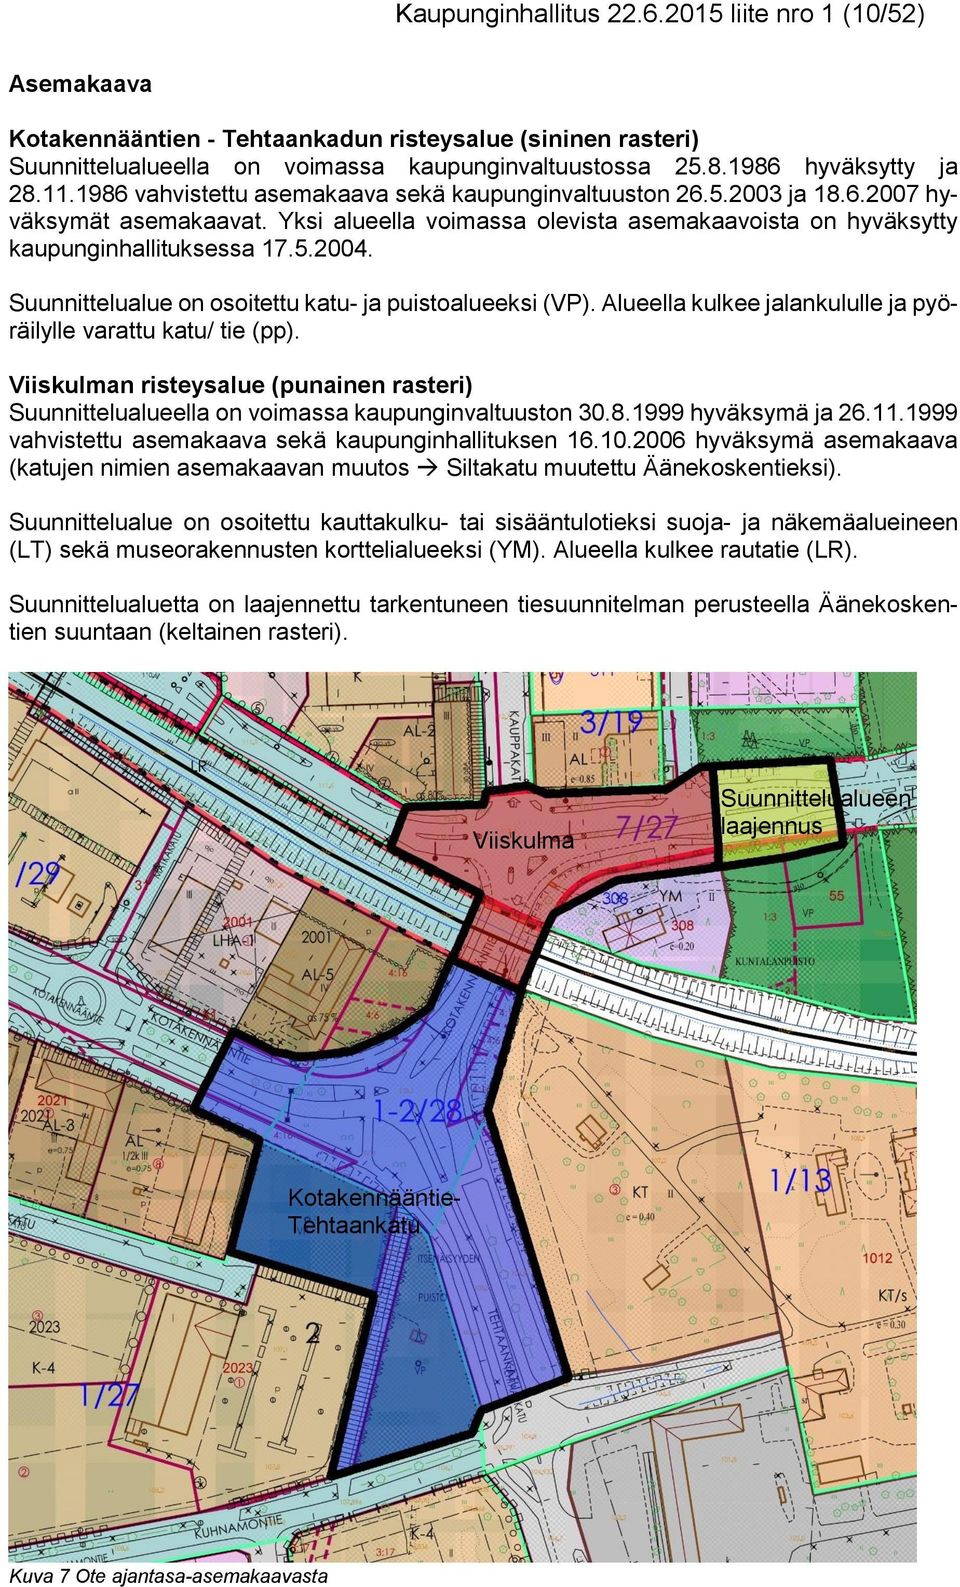 Yksi alueella voimassa olevista asemakaavoista on hyväksytty kaupunginhallituksessa 17.5.2004. Suunnittelualue on osoitettu katu- ja puistoalueeksi (VP).